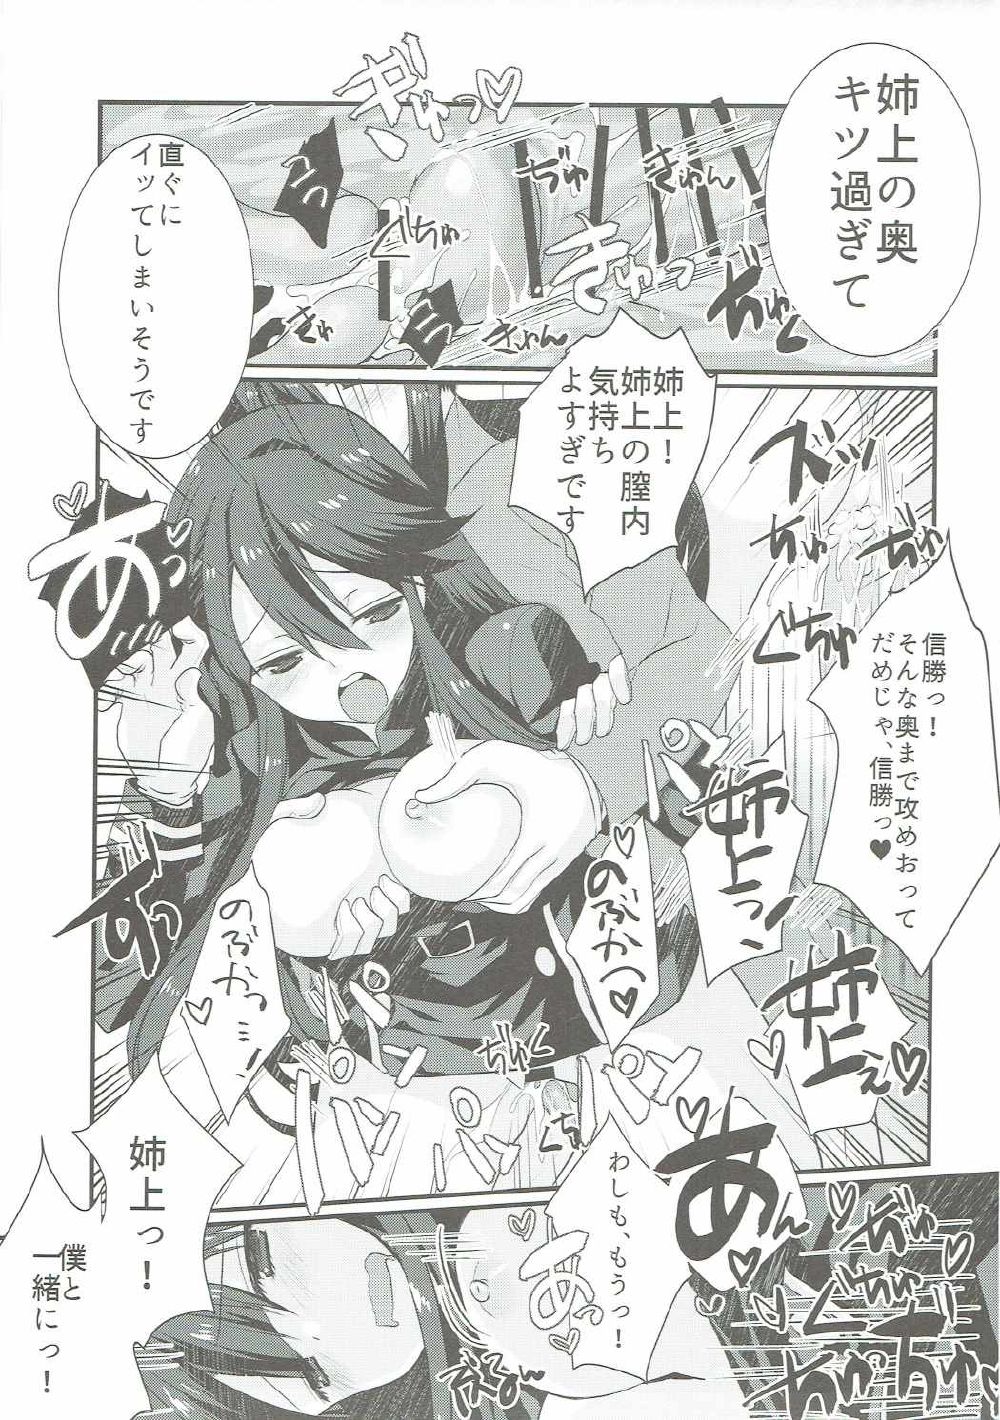 (COMIC1☆11) [ネコマルドウ。 (たぢまよしかづ)] のぶかつがのっぶにぜひもなくすけべするほん (Fate/Grand Order)